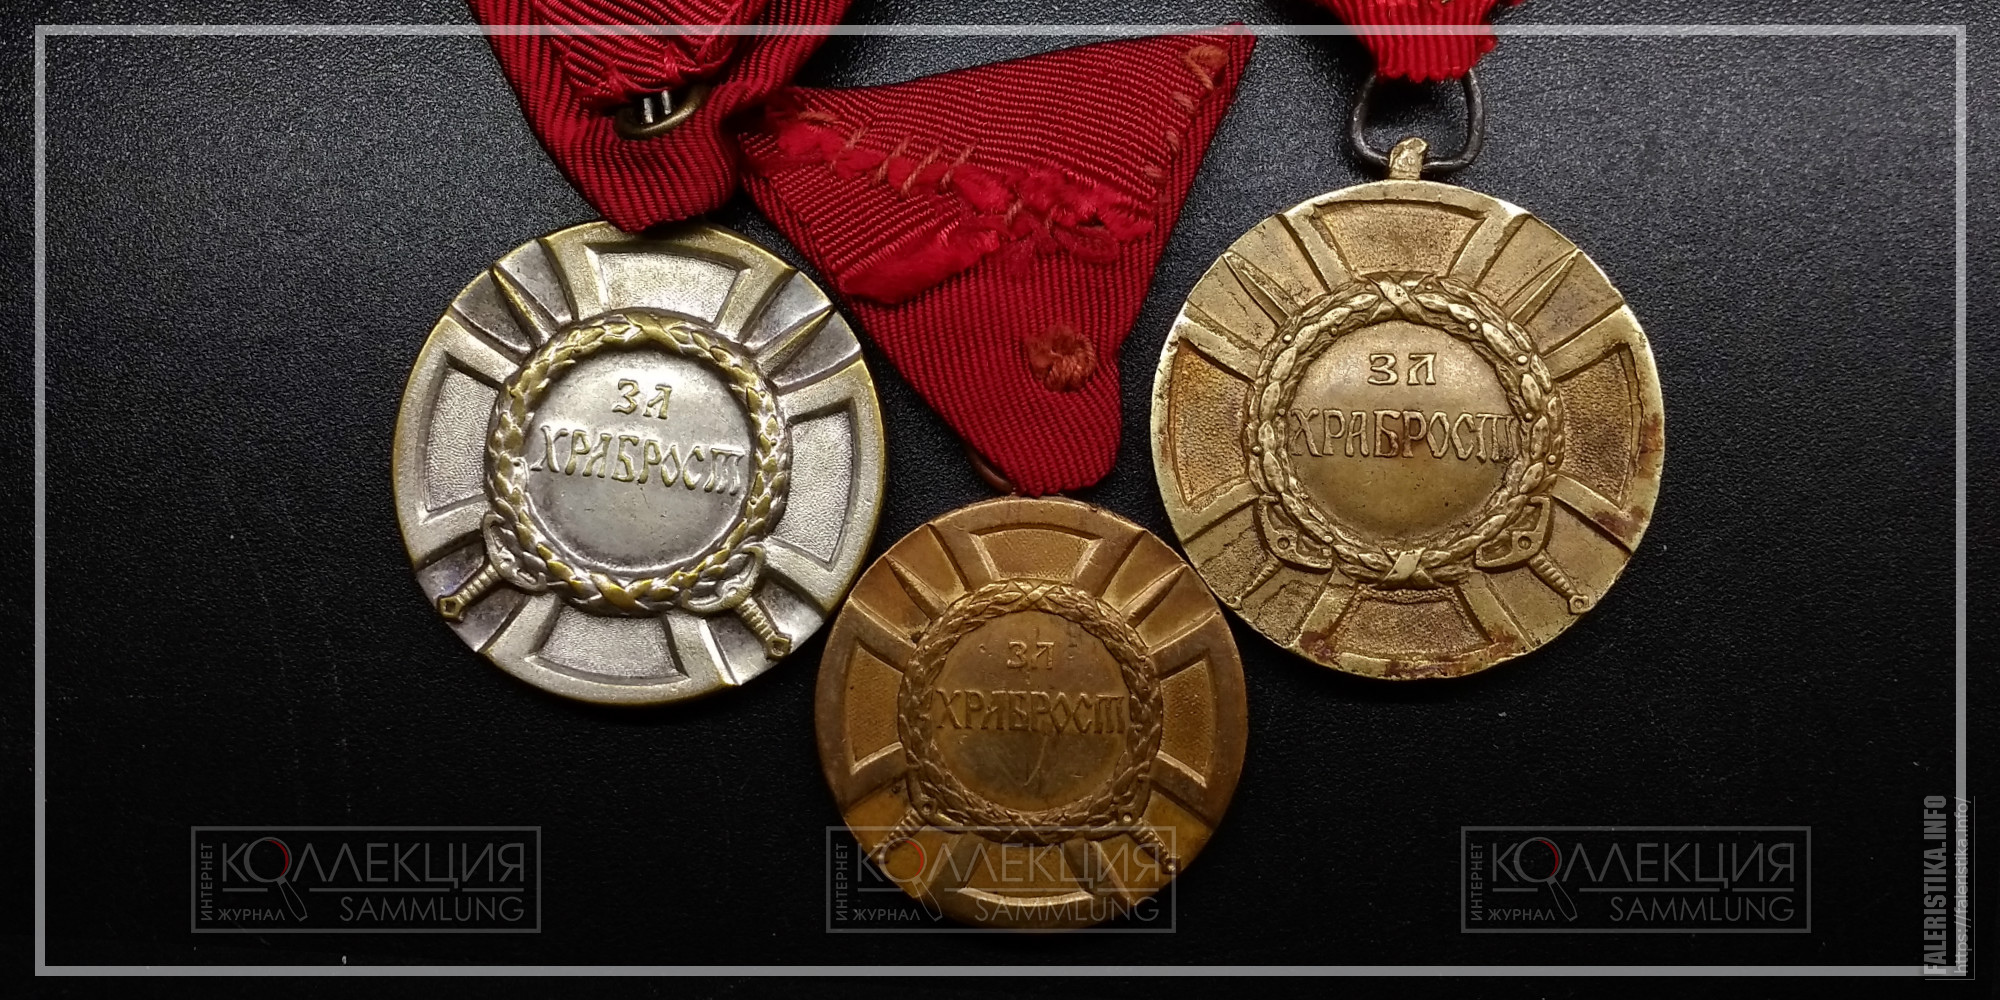 Miloš-Obilić-medals-2.jpg